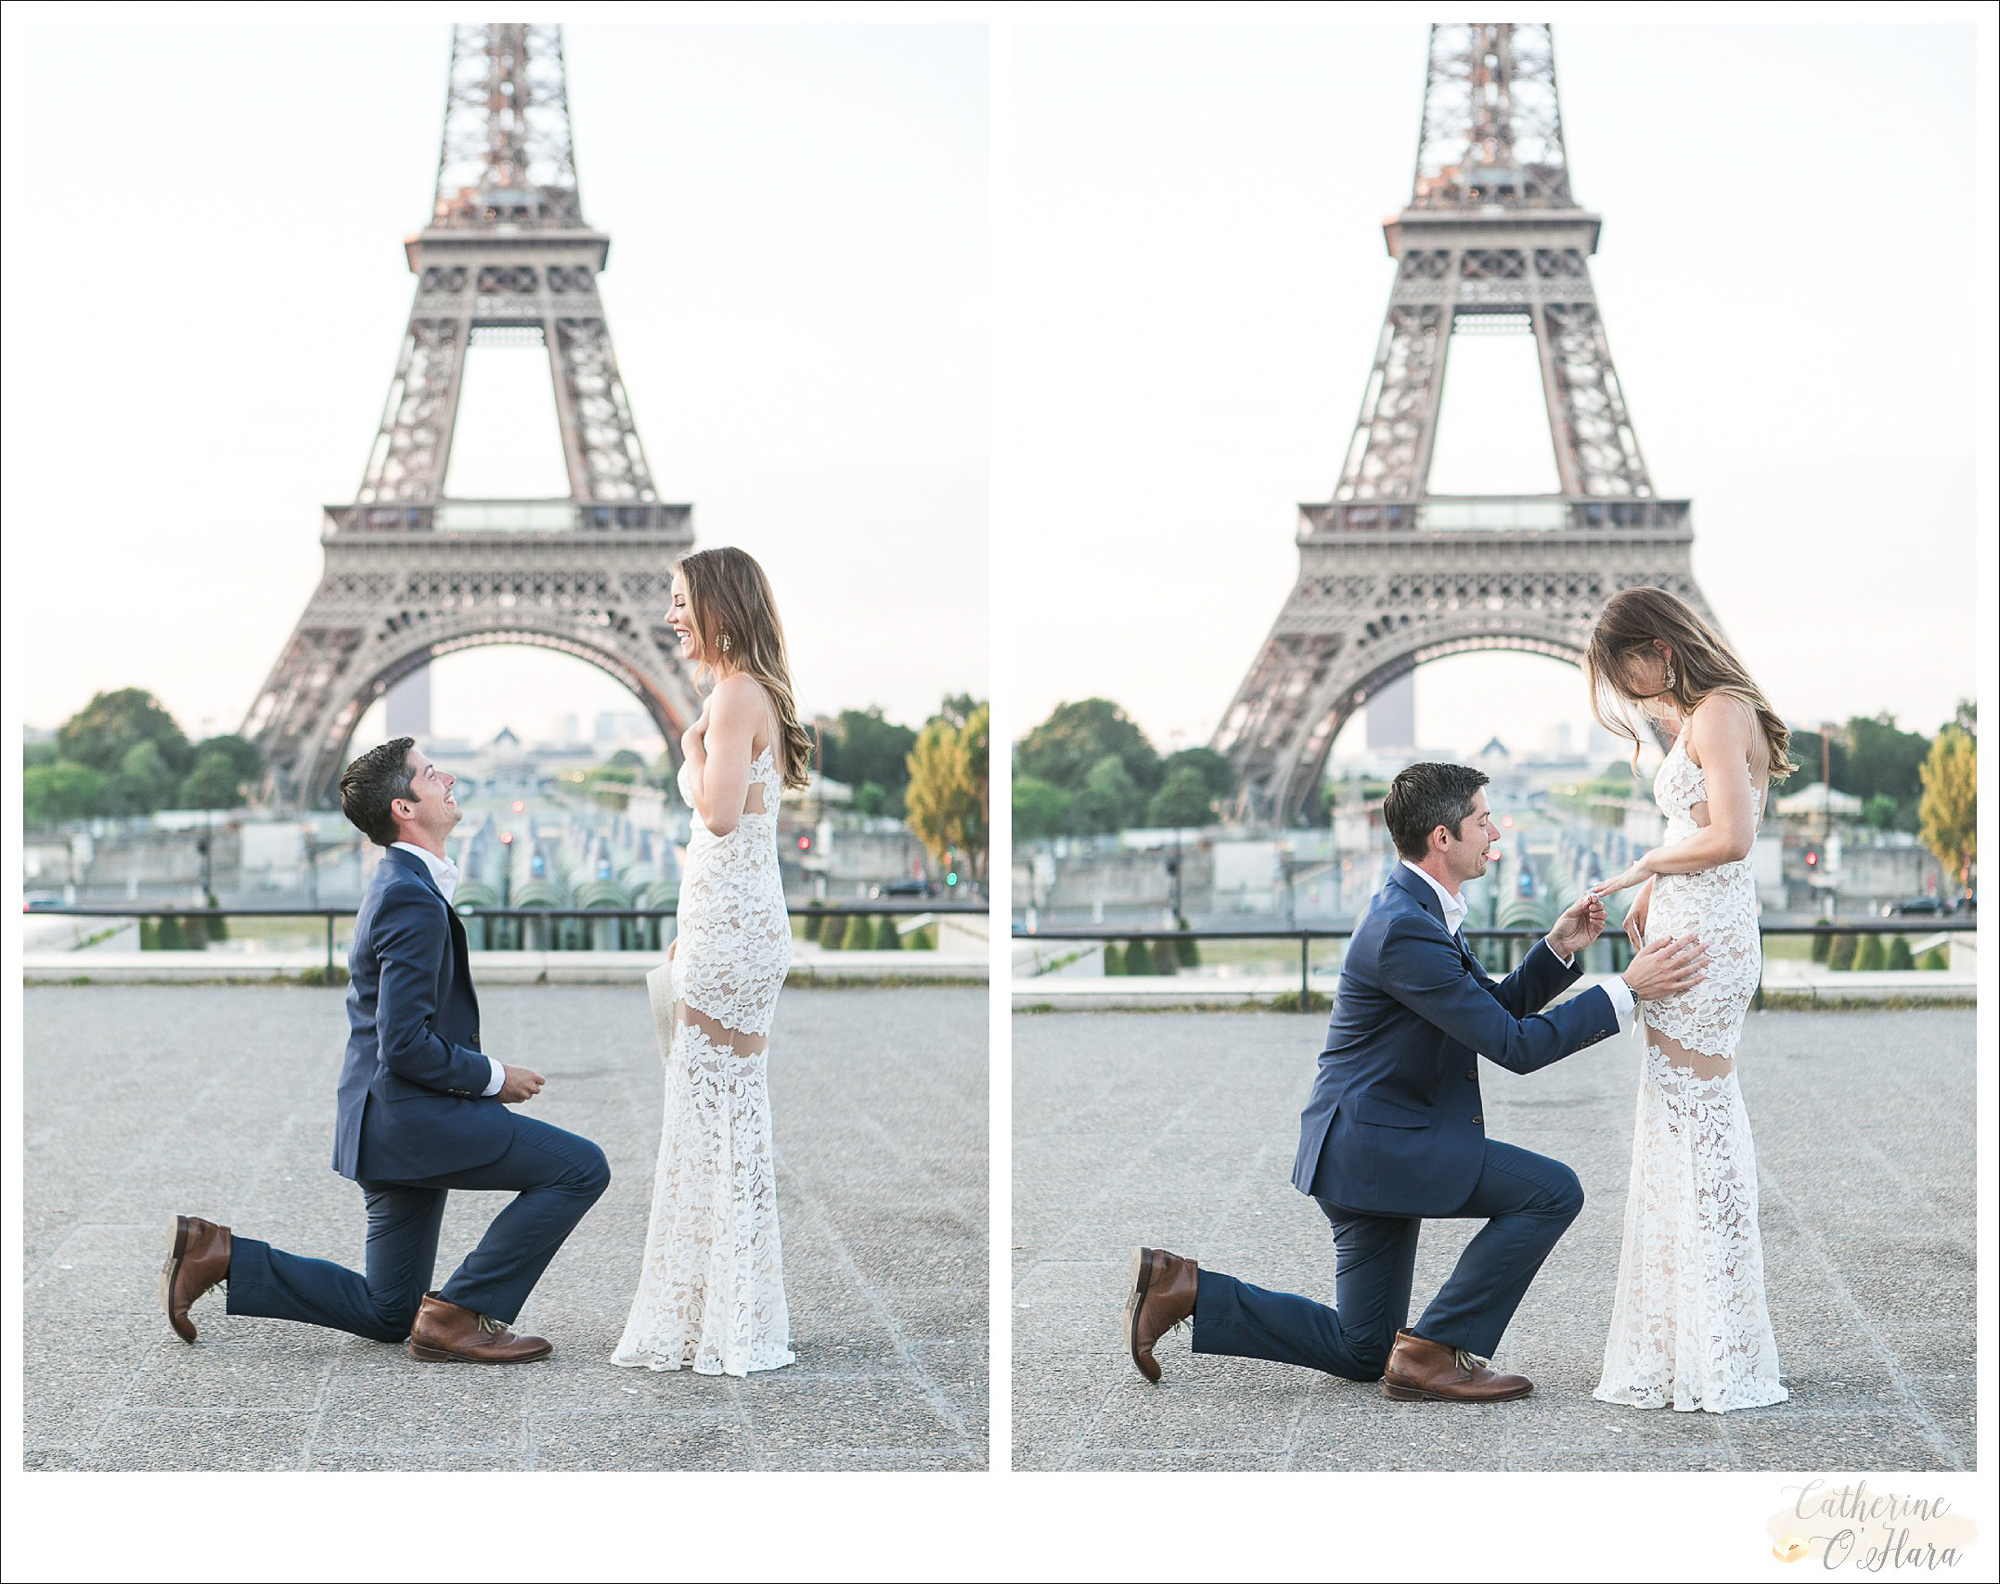 surprise proposal engagement photographer paris france-34.jpg